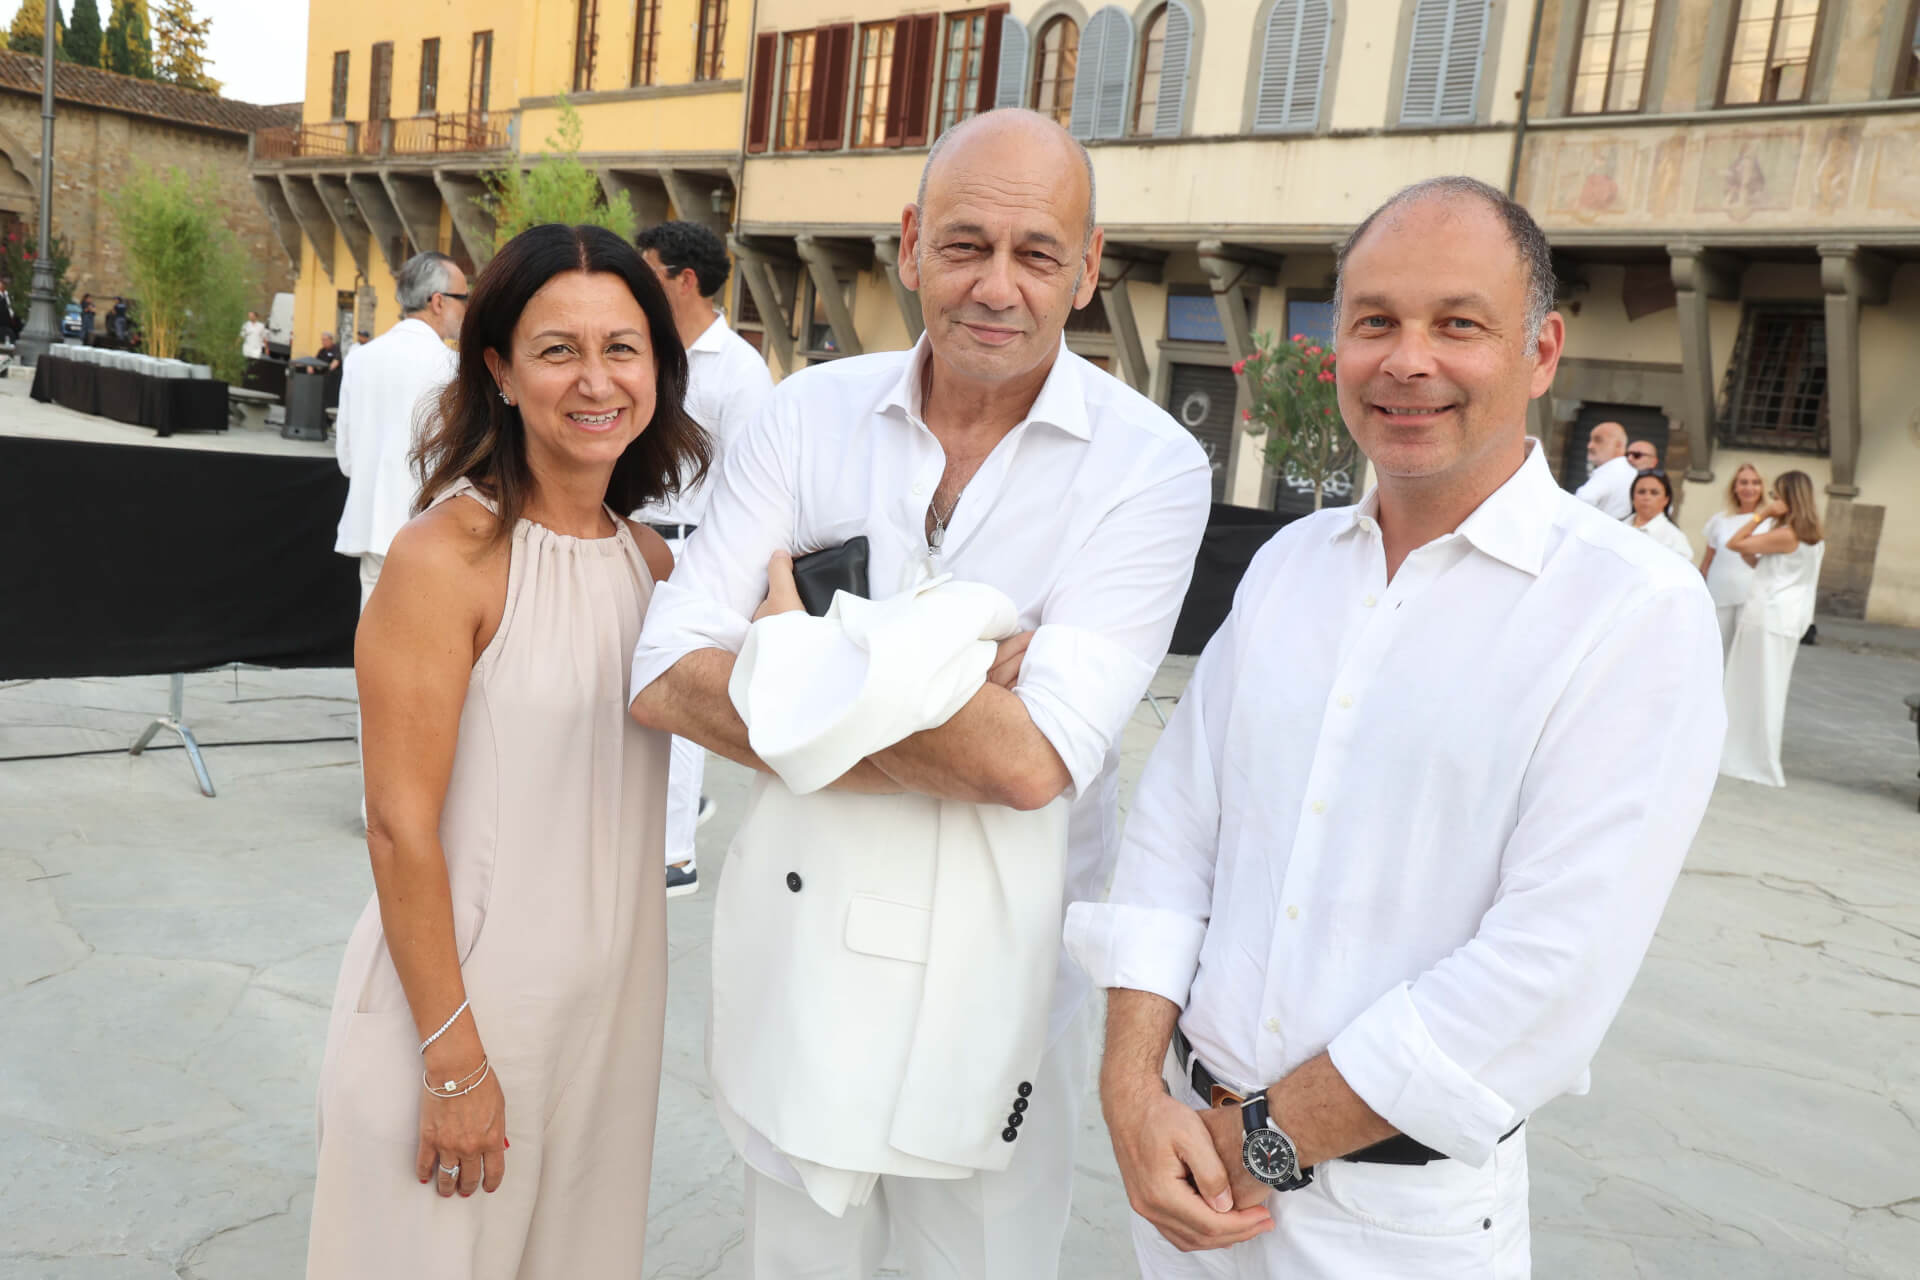 Toni Scervino, Paola and Claudio  Barbarisi